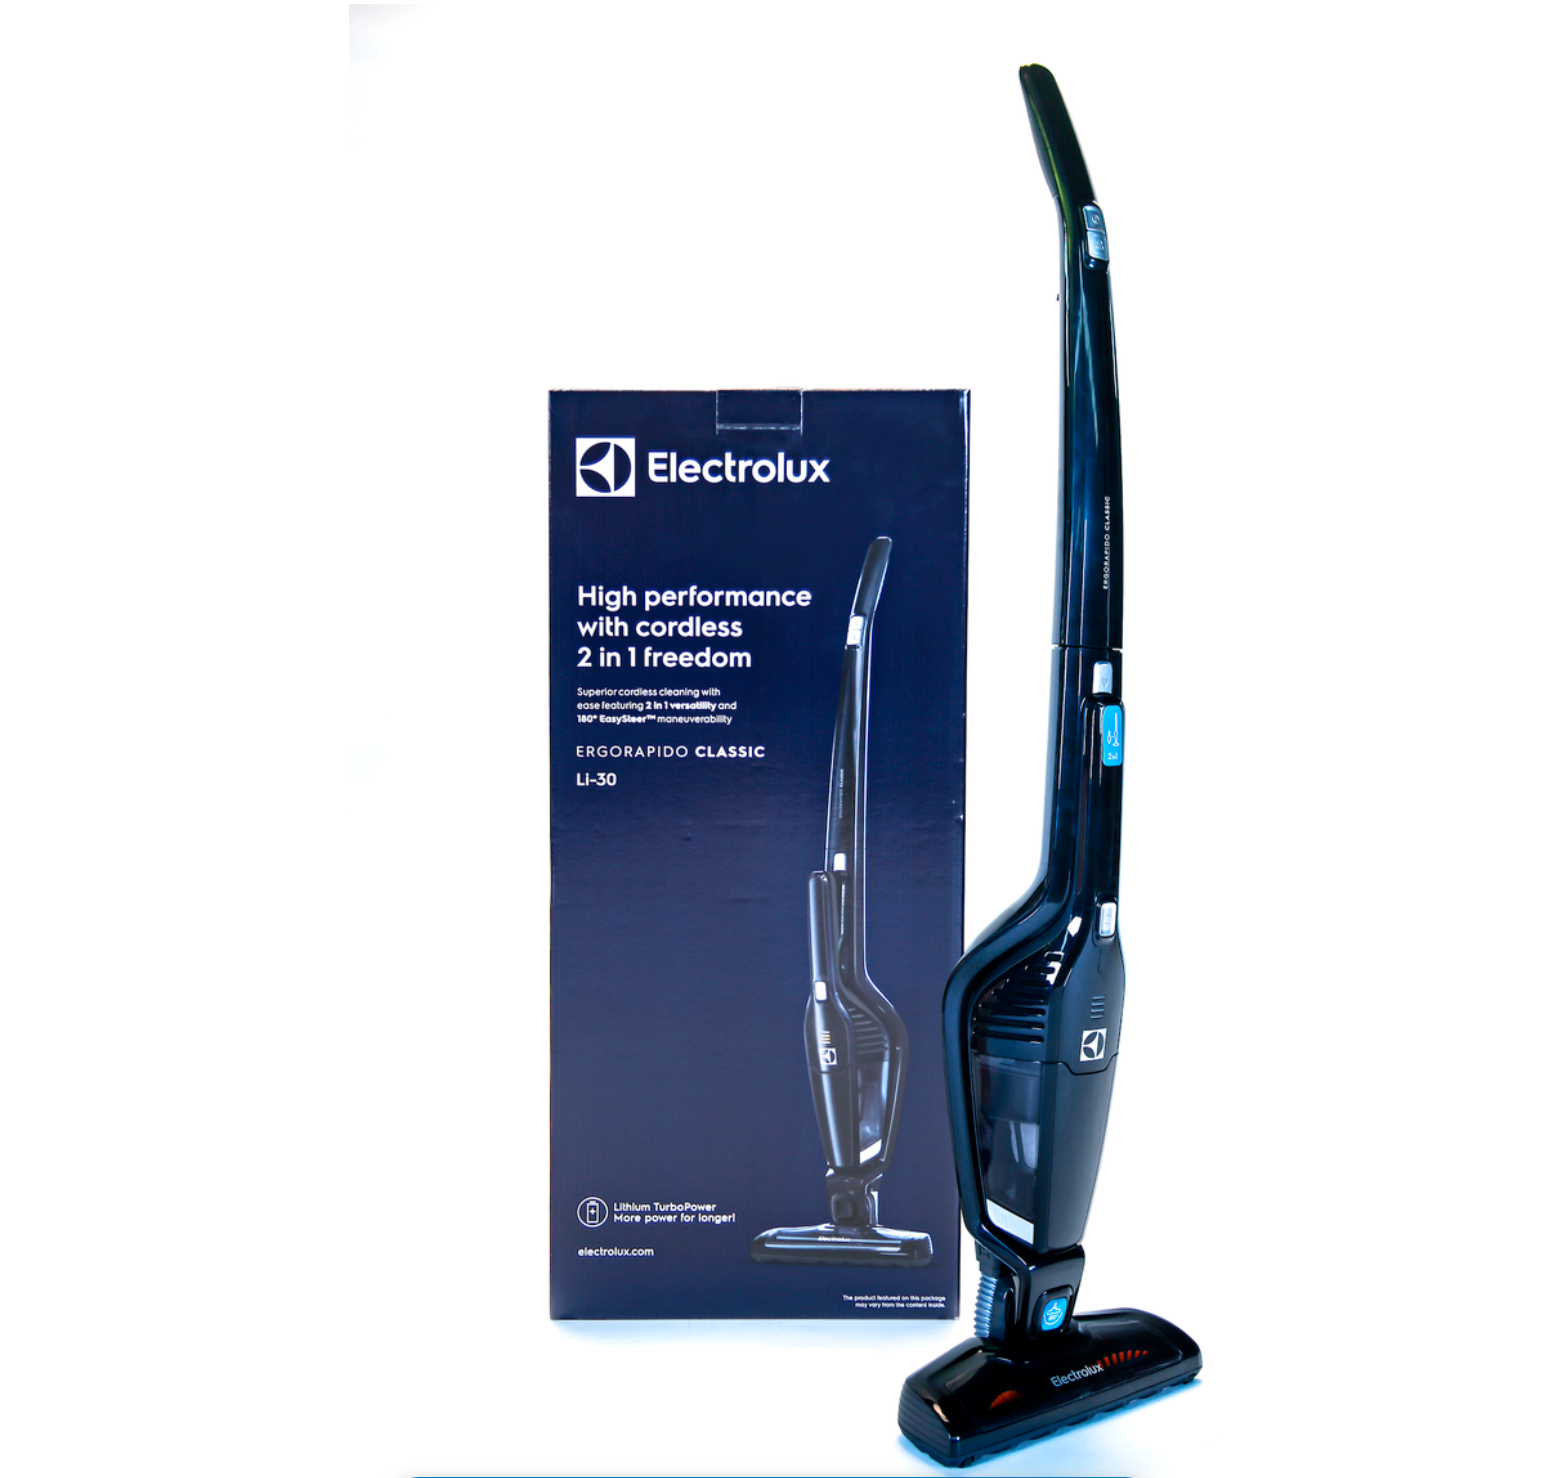 Electrolux - Ergorapido Classic Cordless Vacuum Cleaner